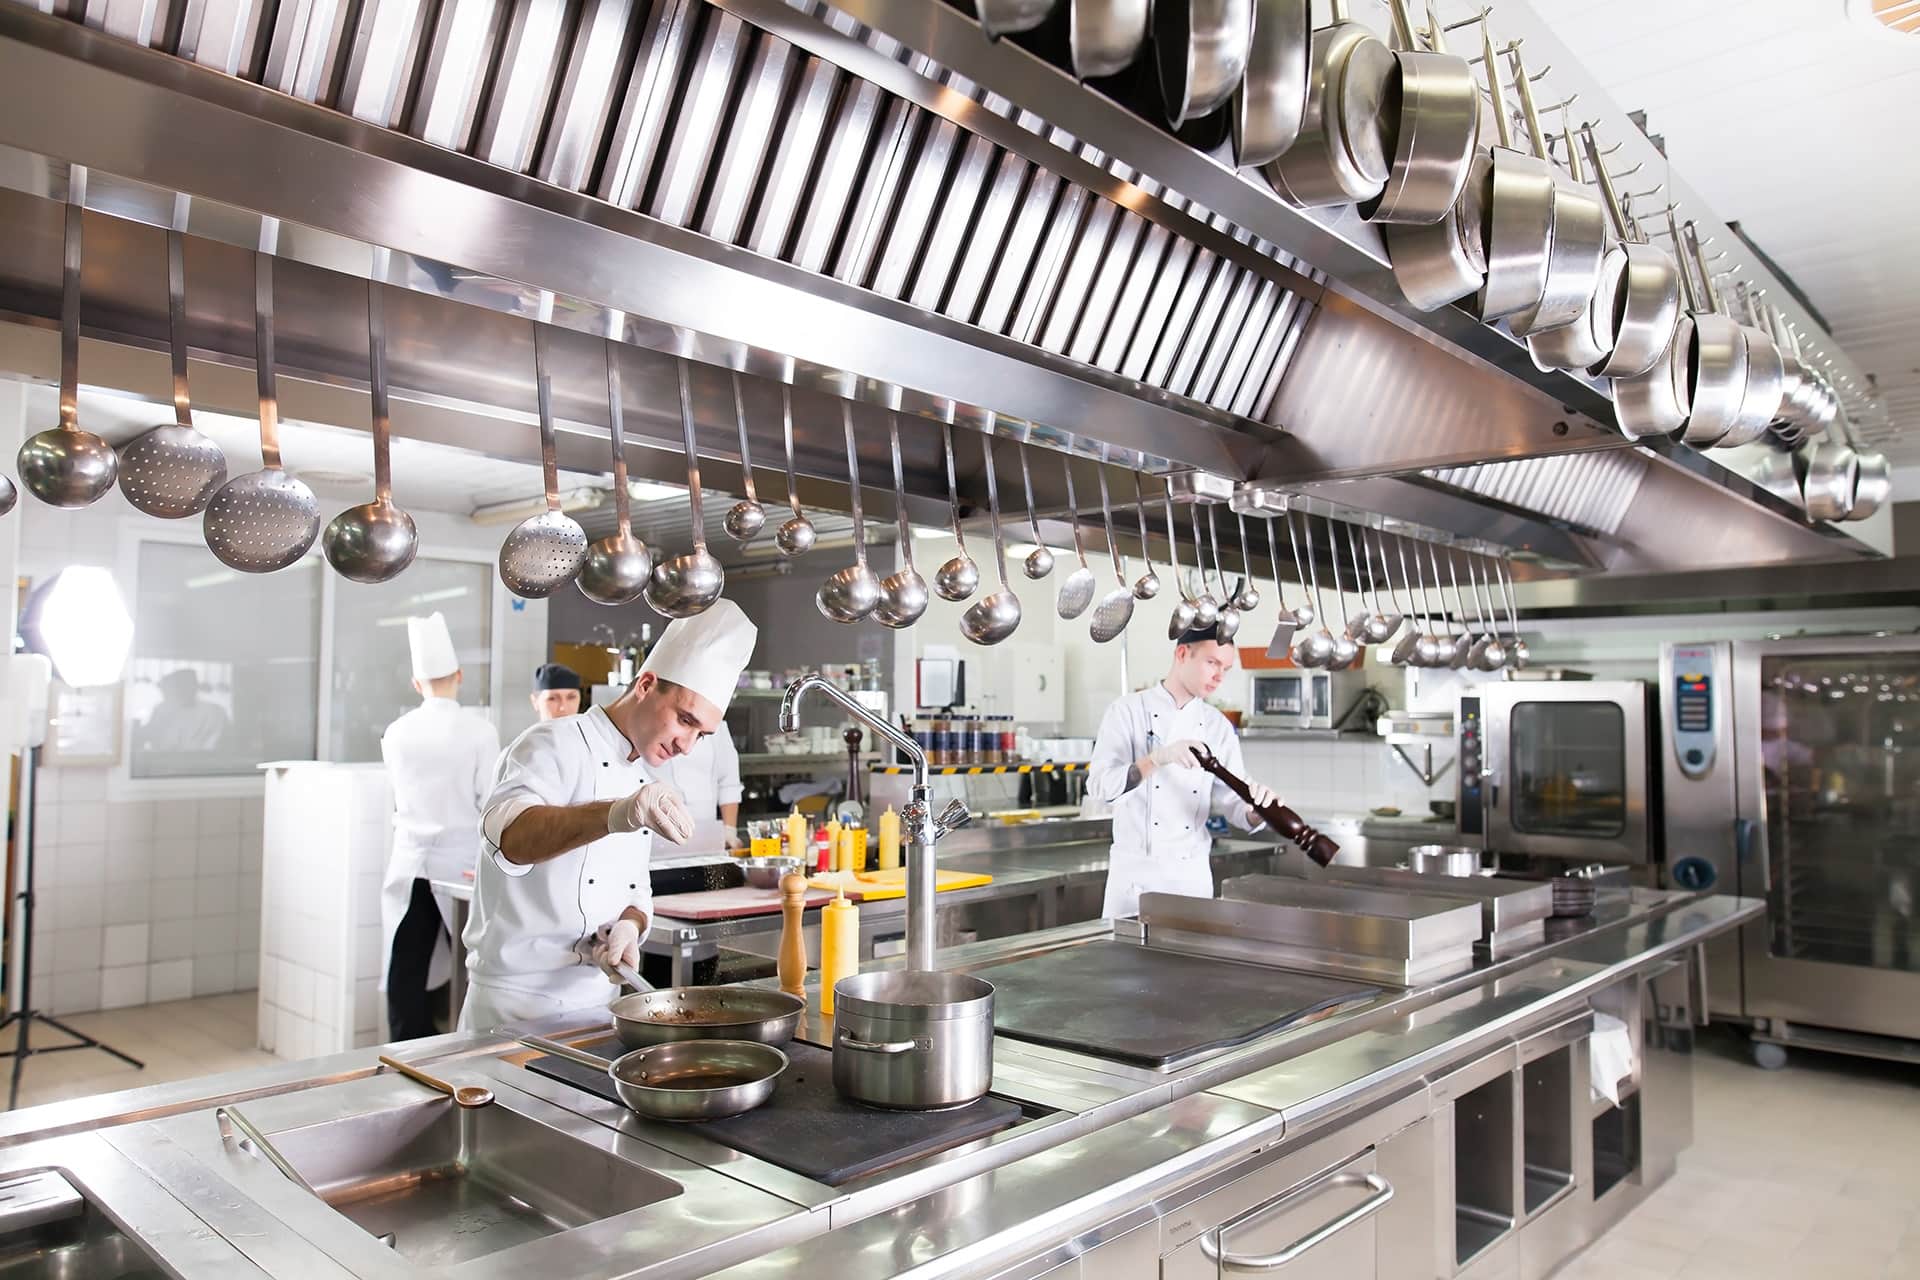 Großküchen und Kantinen müssen hygienisch sauber gehalten werden, um Lebensmittelsicherheit zu gewährleisten